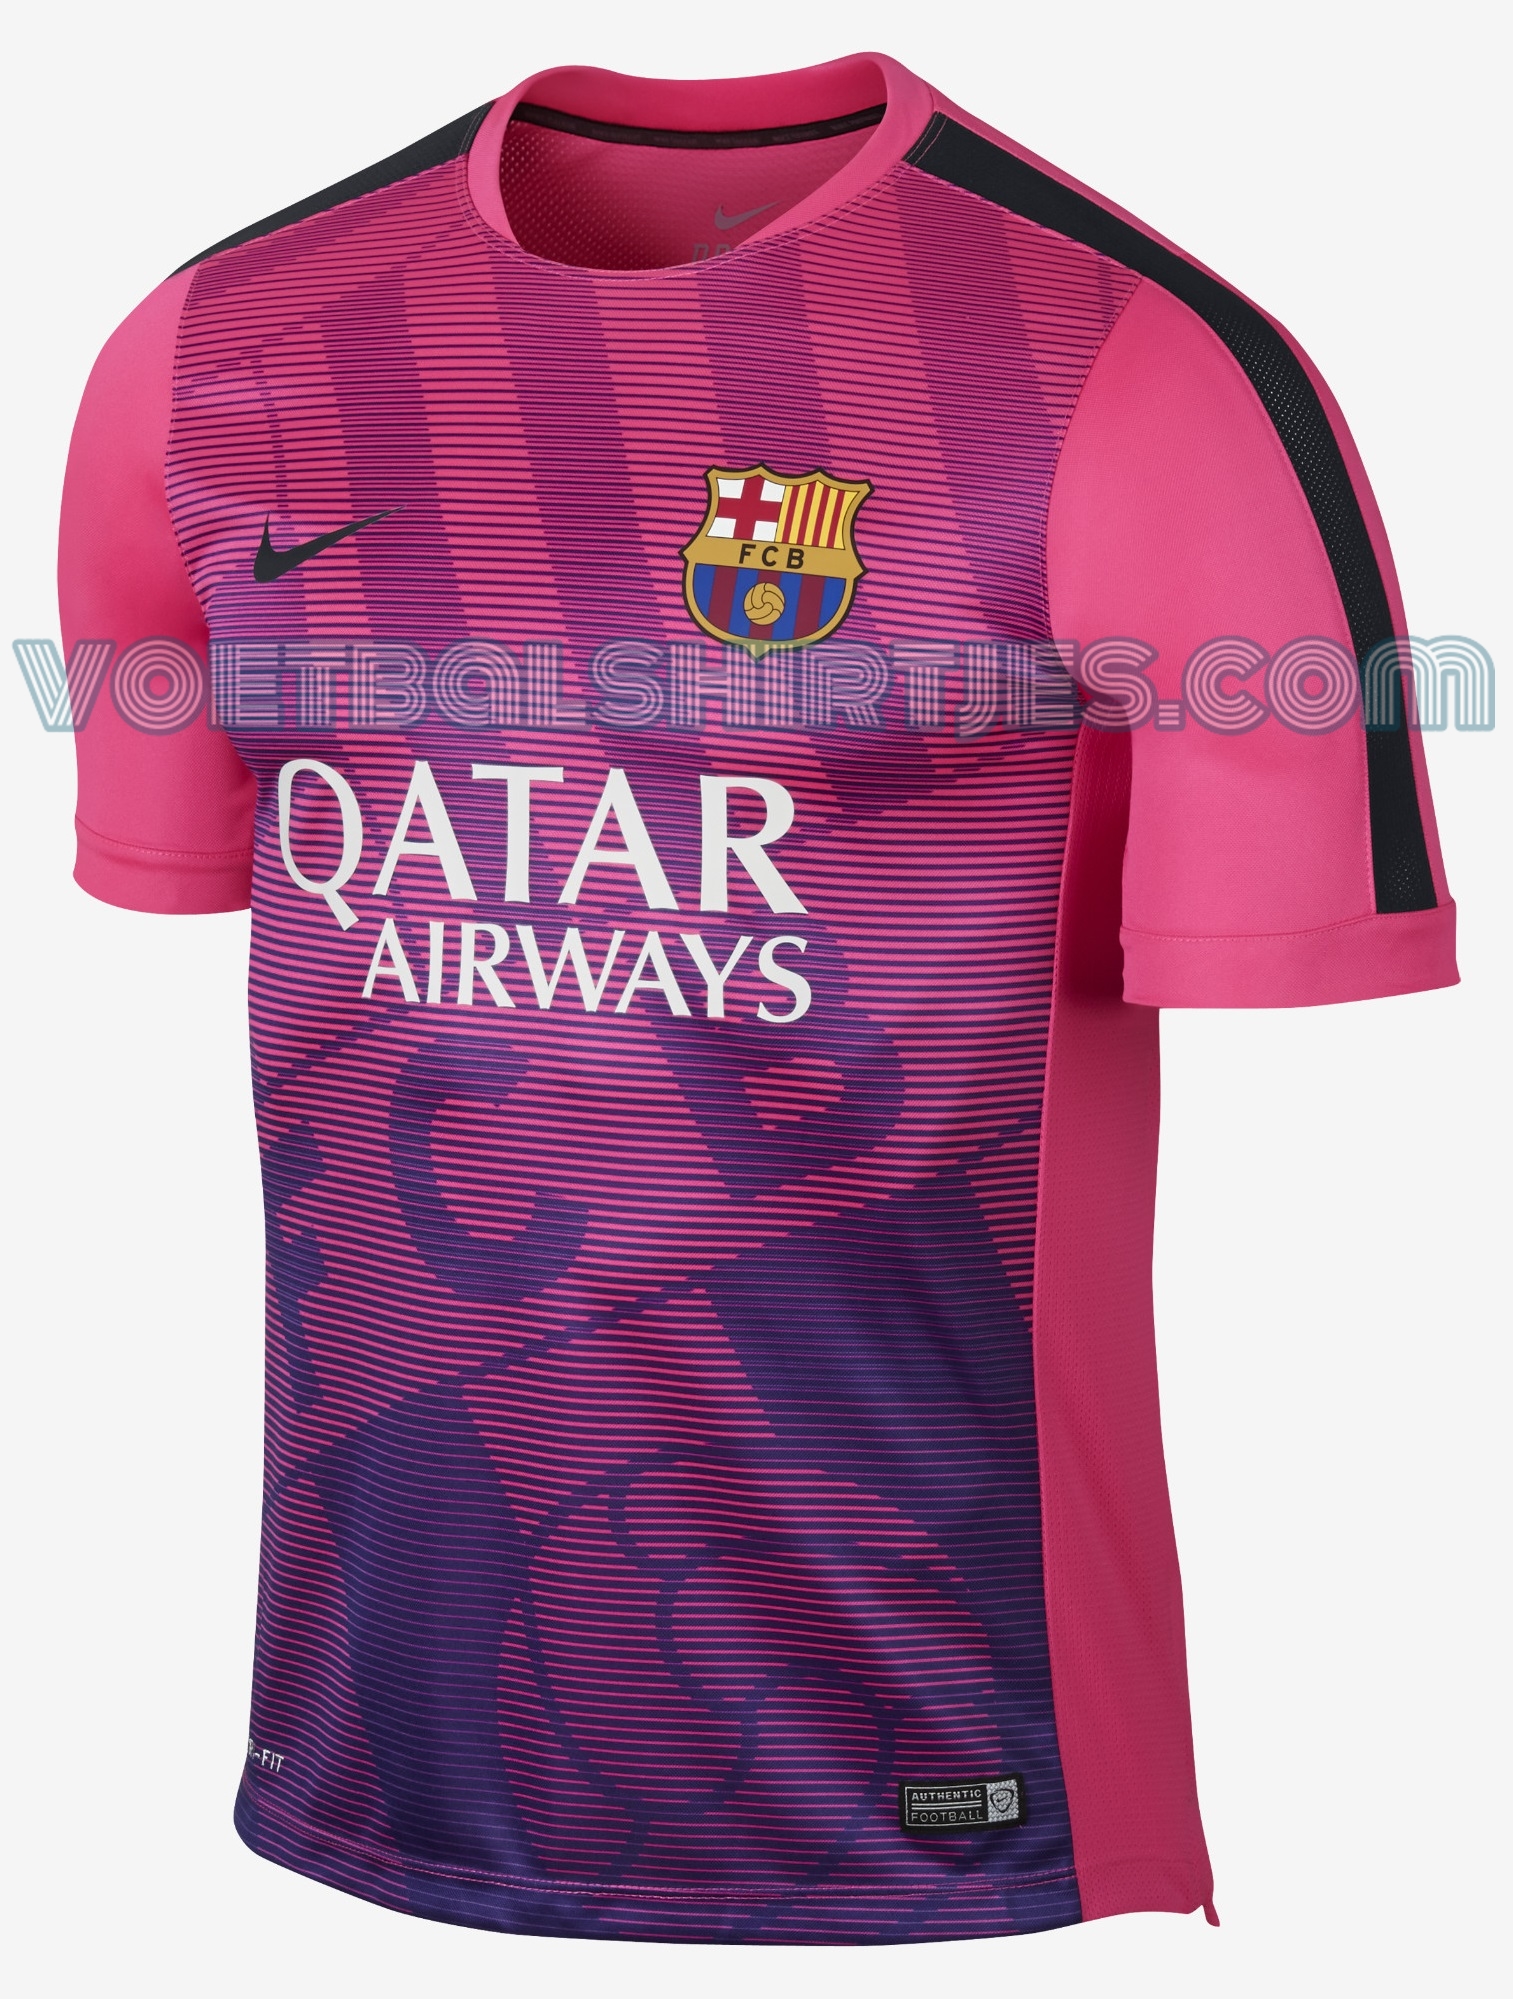 FC Barcelona Prematch top 2015 Voetbalshirtjes.com